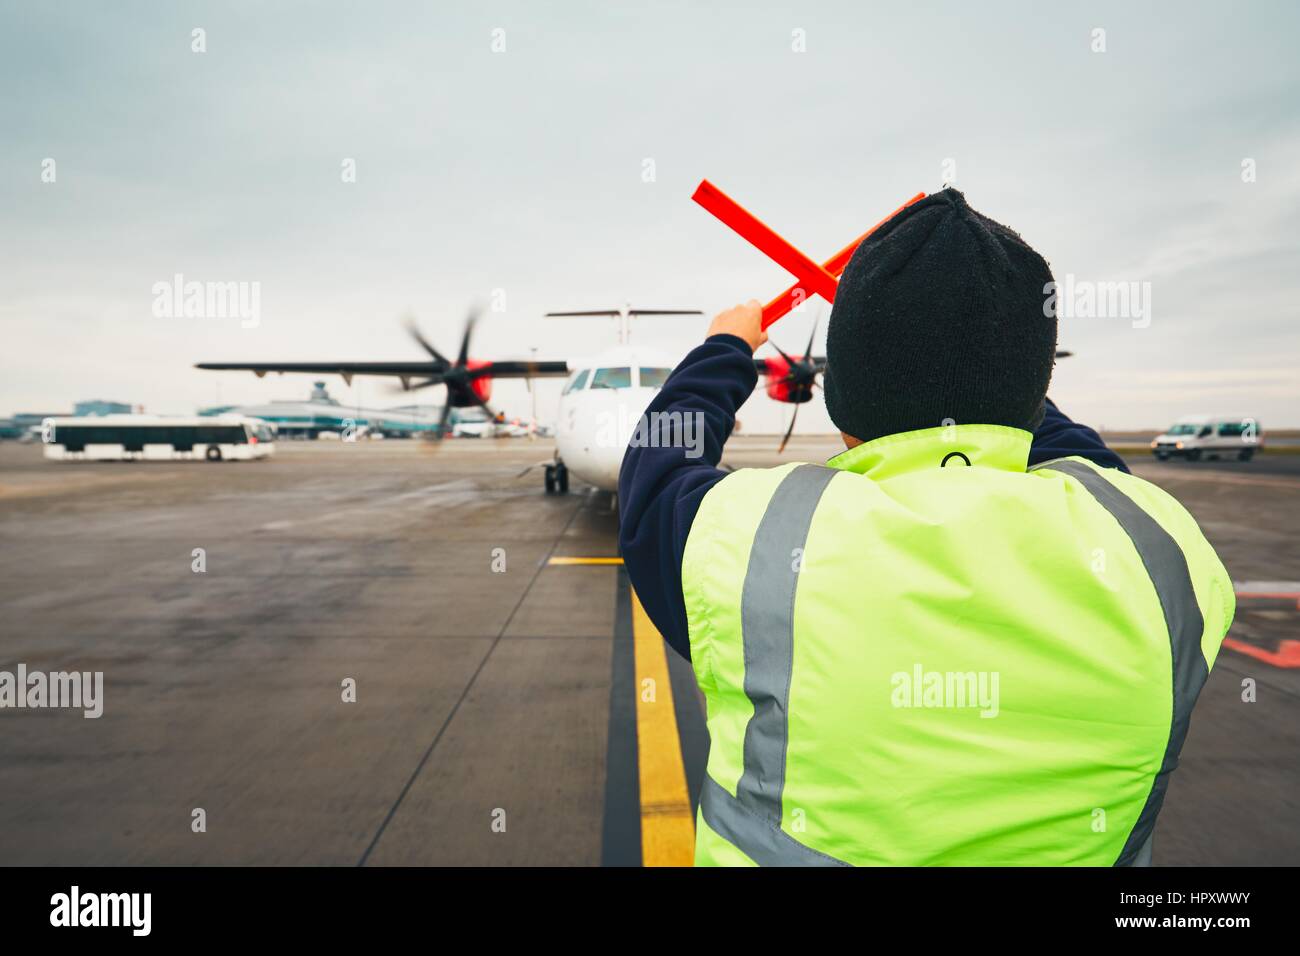 PRAGUE, RÉPUBLIQUE TCHÈQUE - 1 décembre 2016 : Avions placier au cours de la signalisation visuelle pour les pilotes après l'atterrissage. L'aéroport de Prague Vaclav Havel sur Décembre Banque D'Images